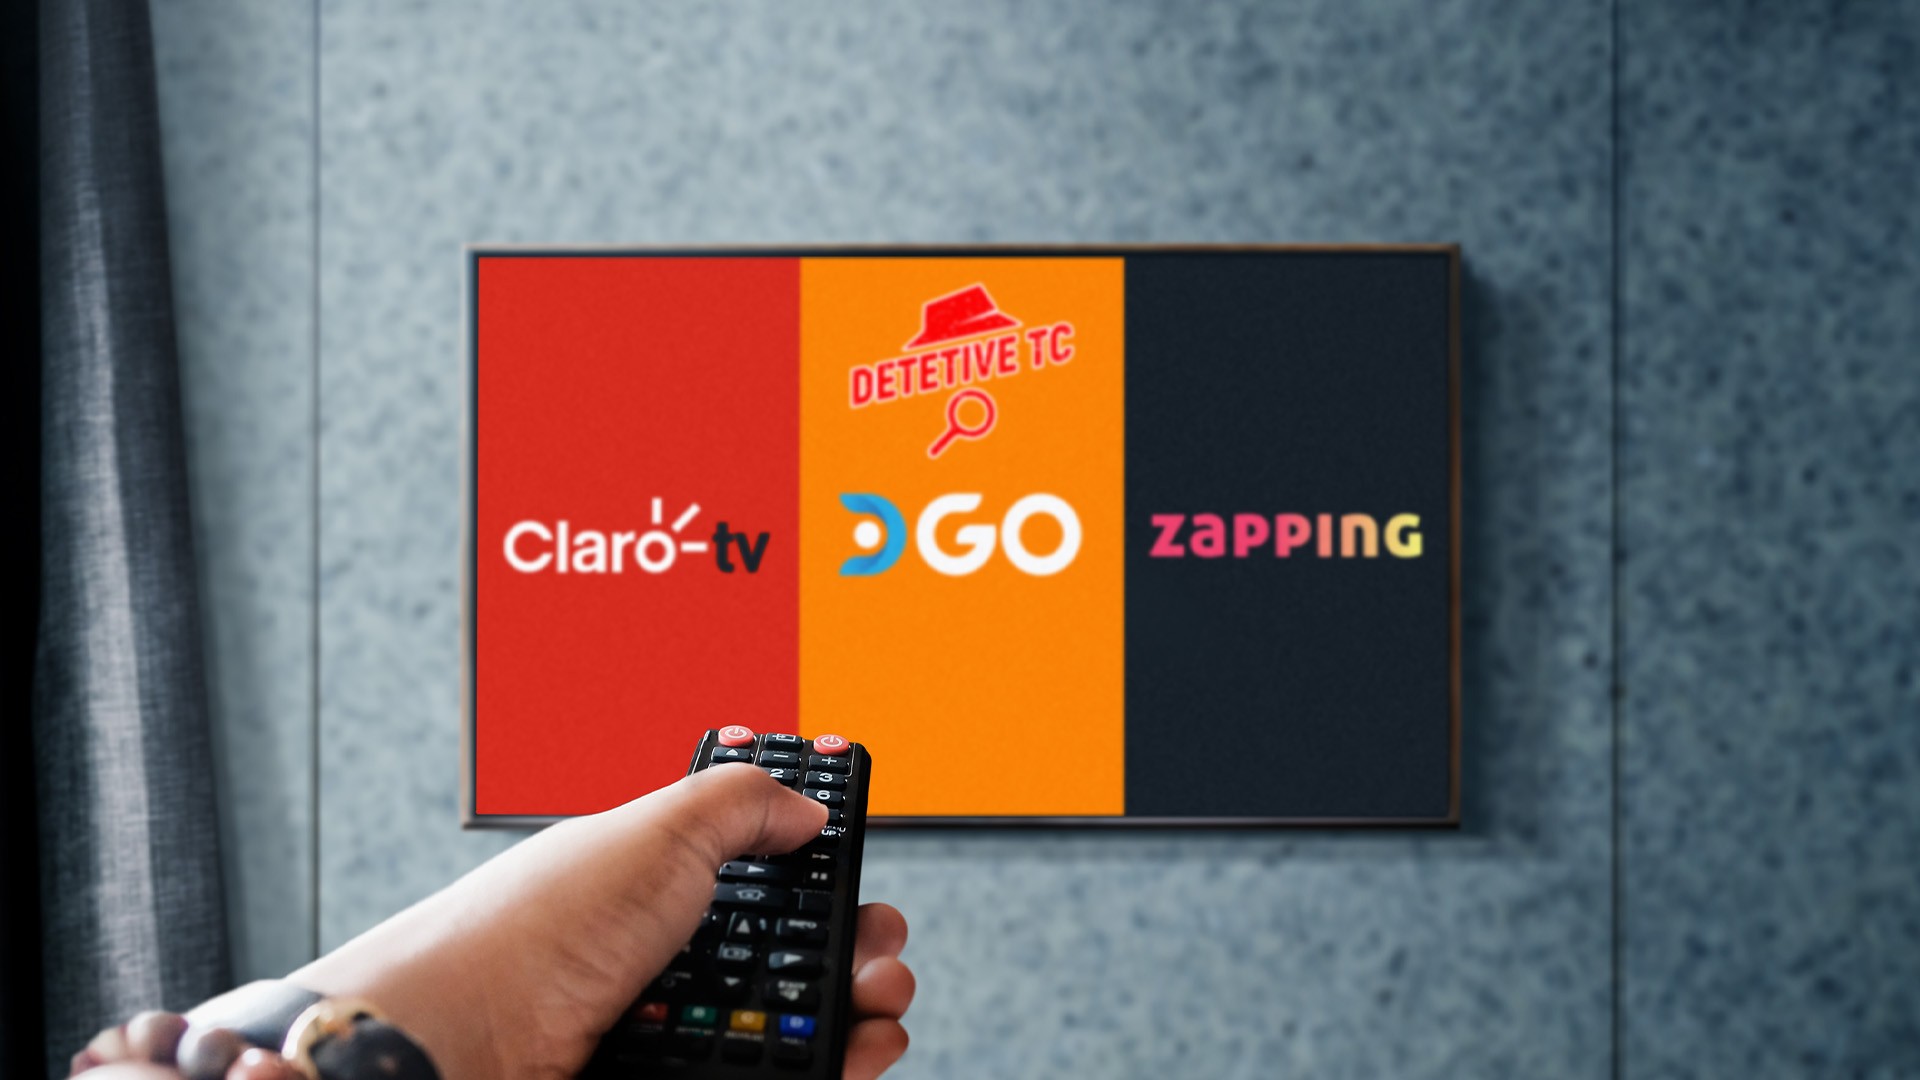 CLARO anuncia chegada do novo streaming HBO MAX no serviço CLARO